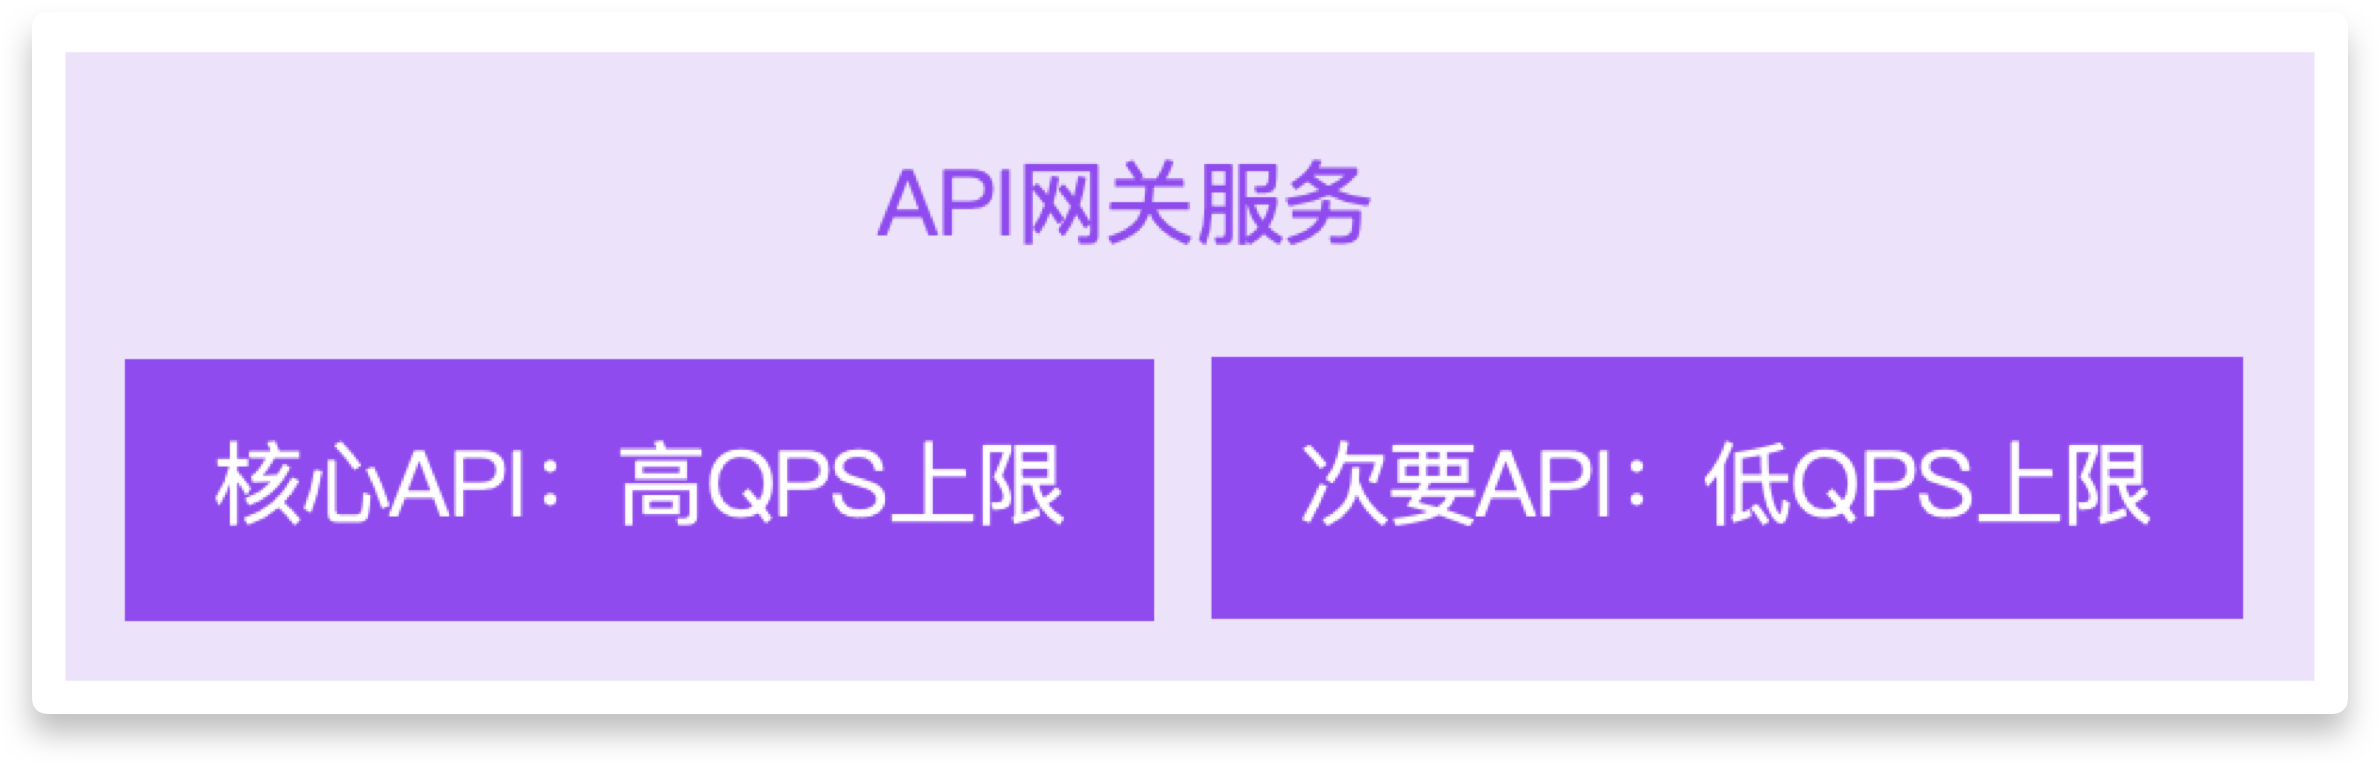 使用腾讯云 API 网关实现多维度精细化限流